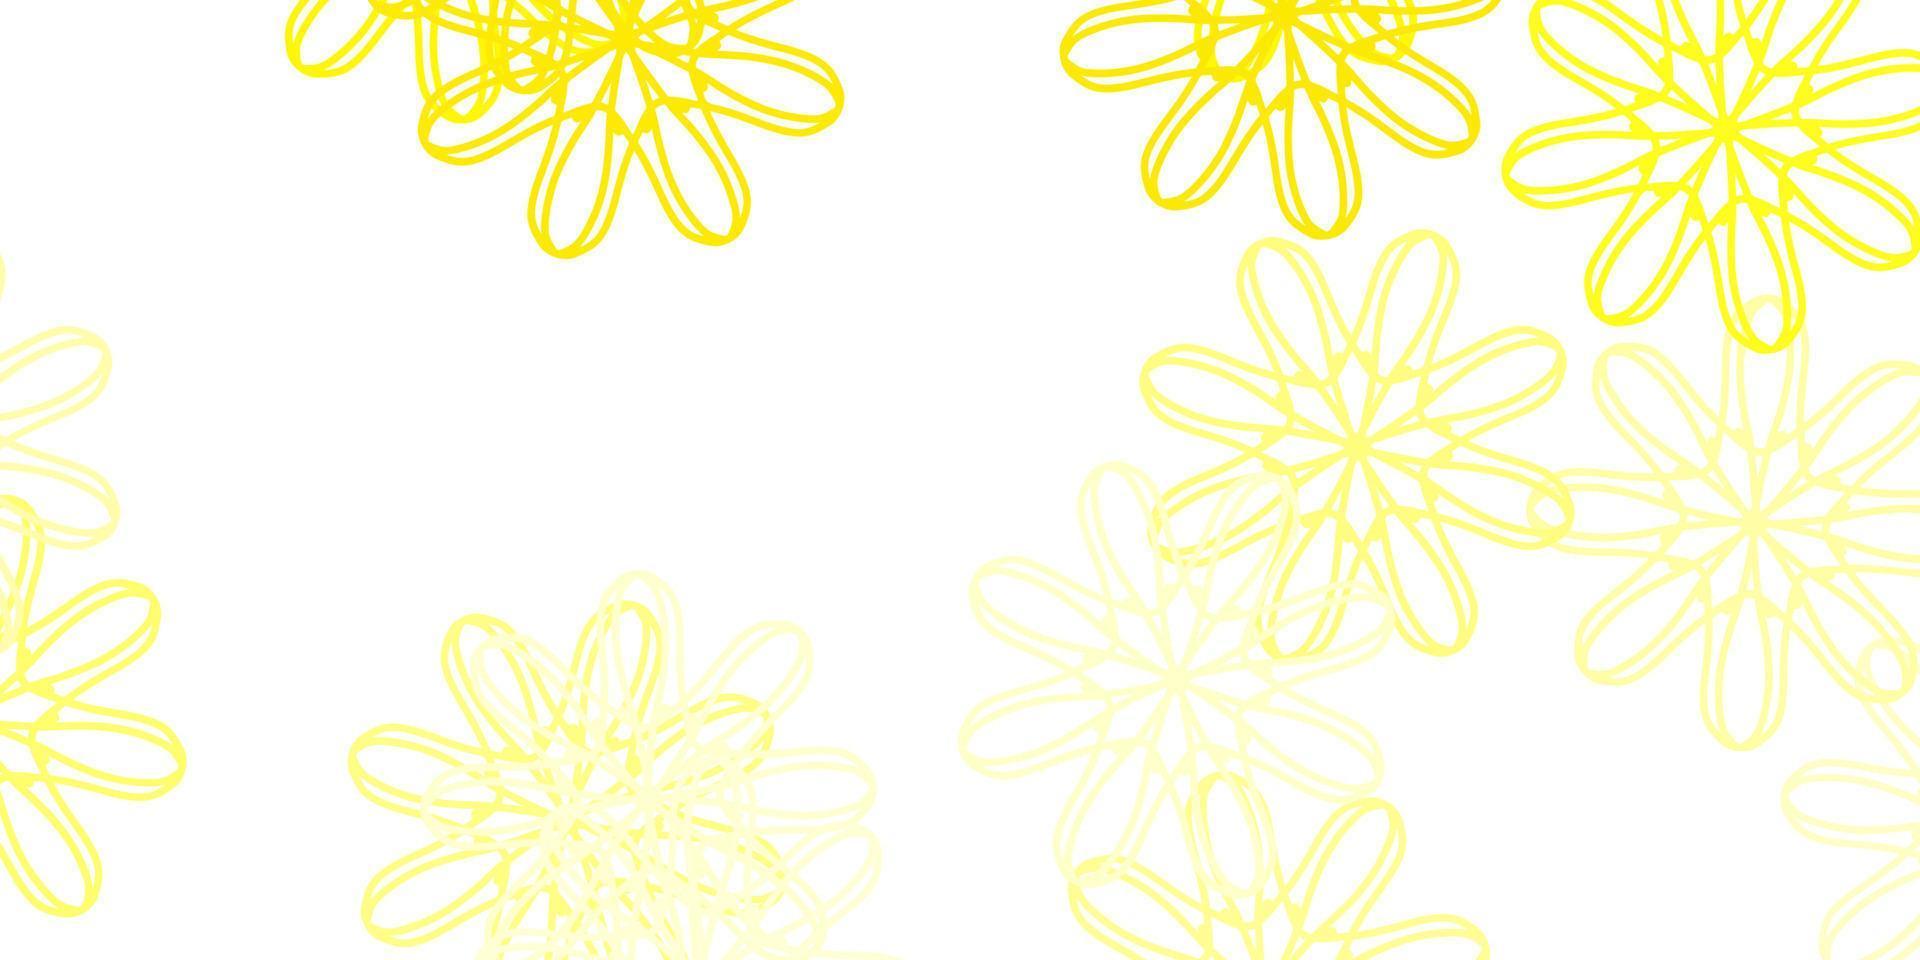 fundo do doodle do vetor amarelo claro com flores.